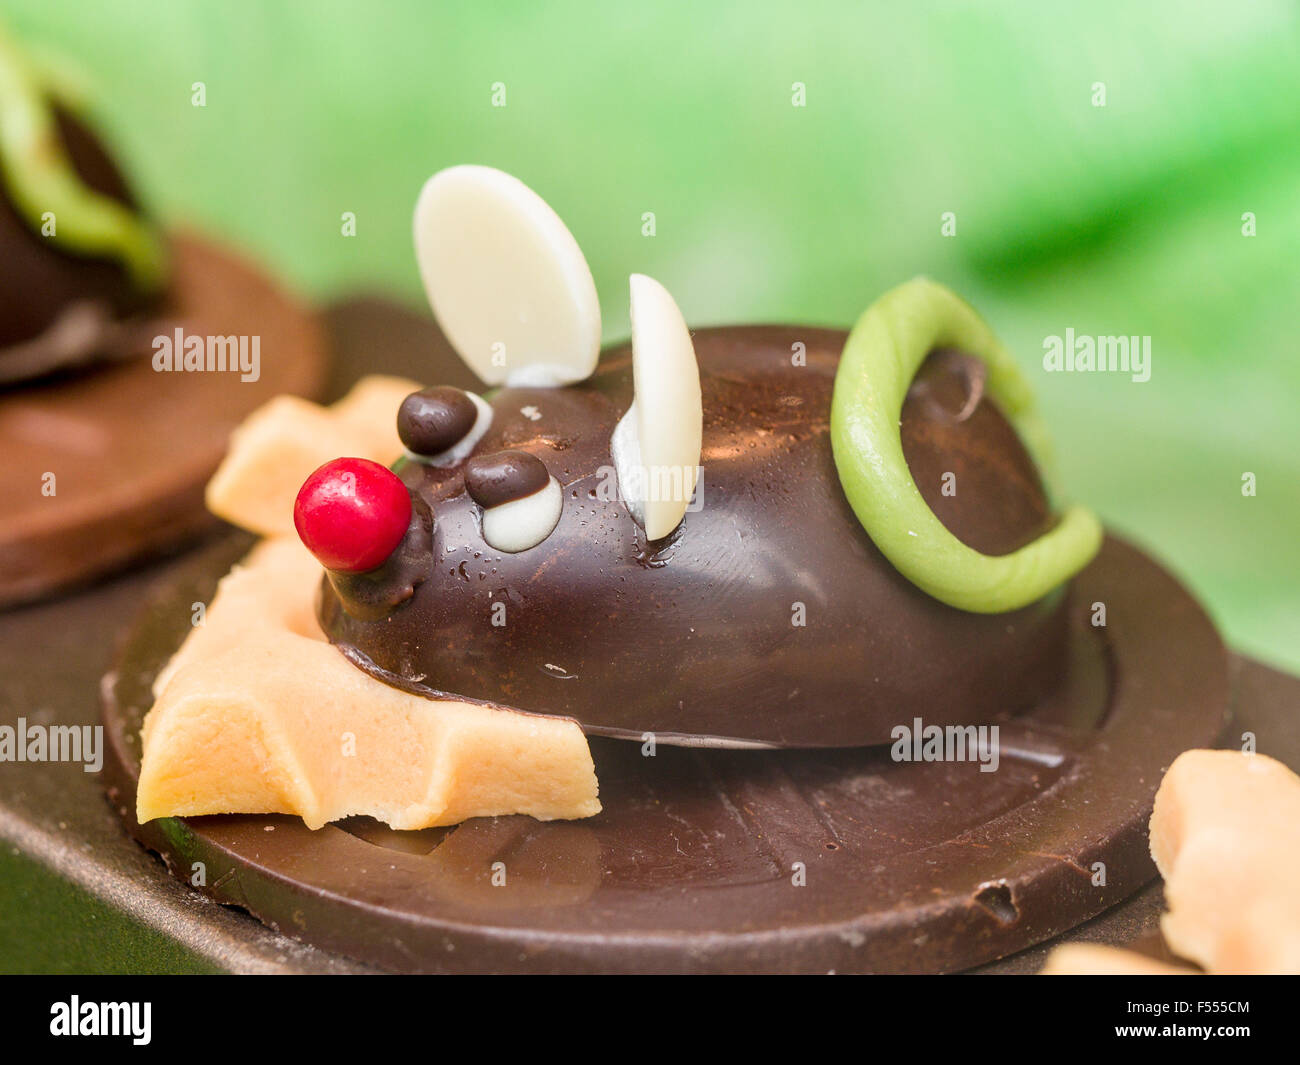 La souris et le fromage de la sculpture en chocolat. Un moulage lunatique d'une petite souris grignoter le fromage fait partie d'une vitrine Banque D'Images